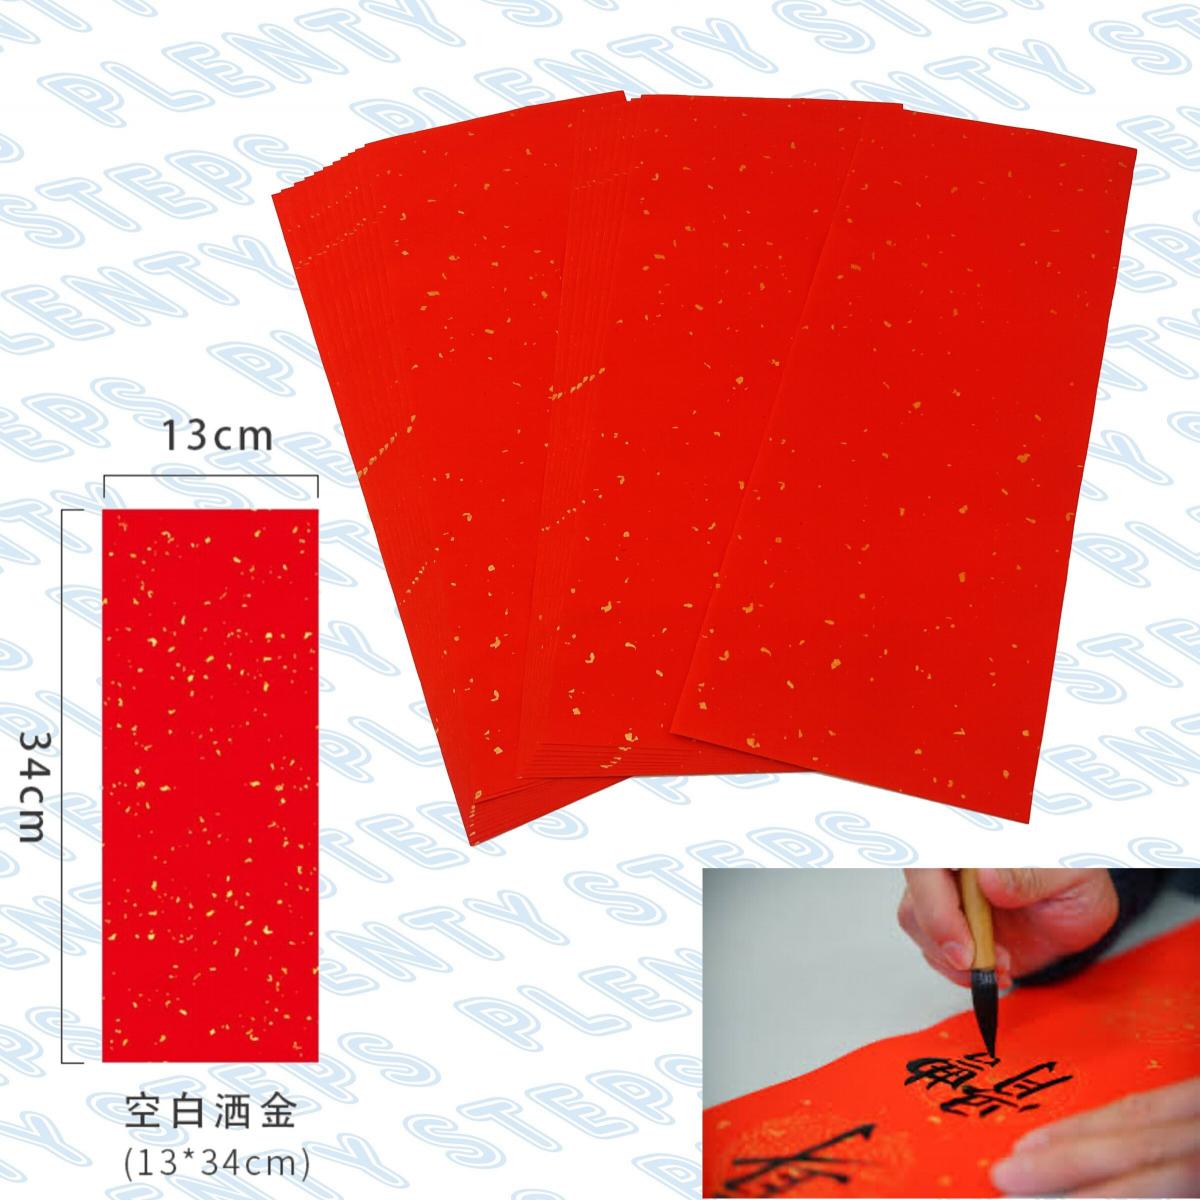 多致紙品| 新款空白手寫揮春對聯紙20張| HKTVmall 香港最大網購平台